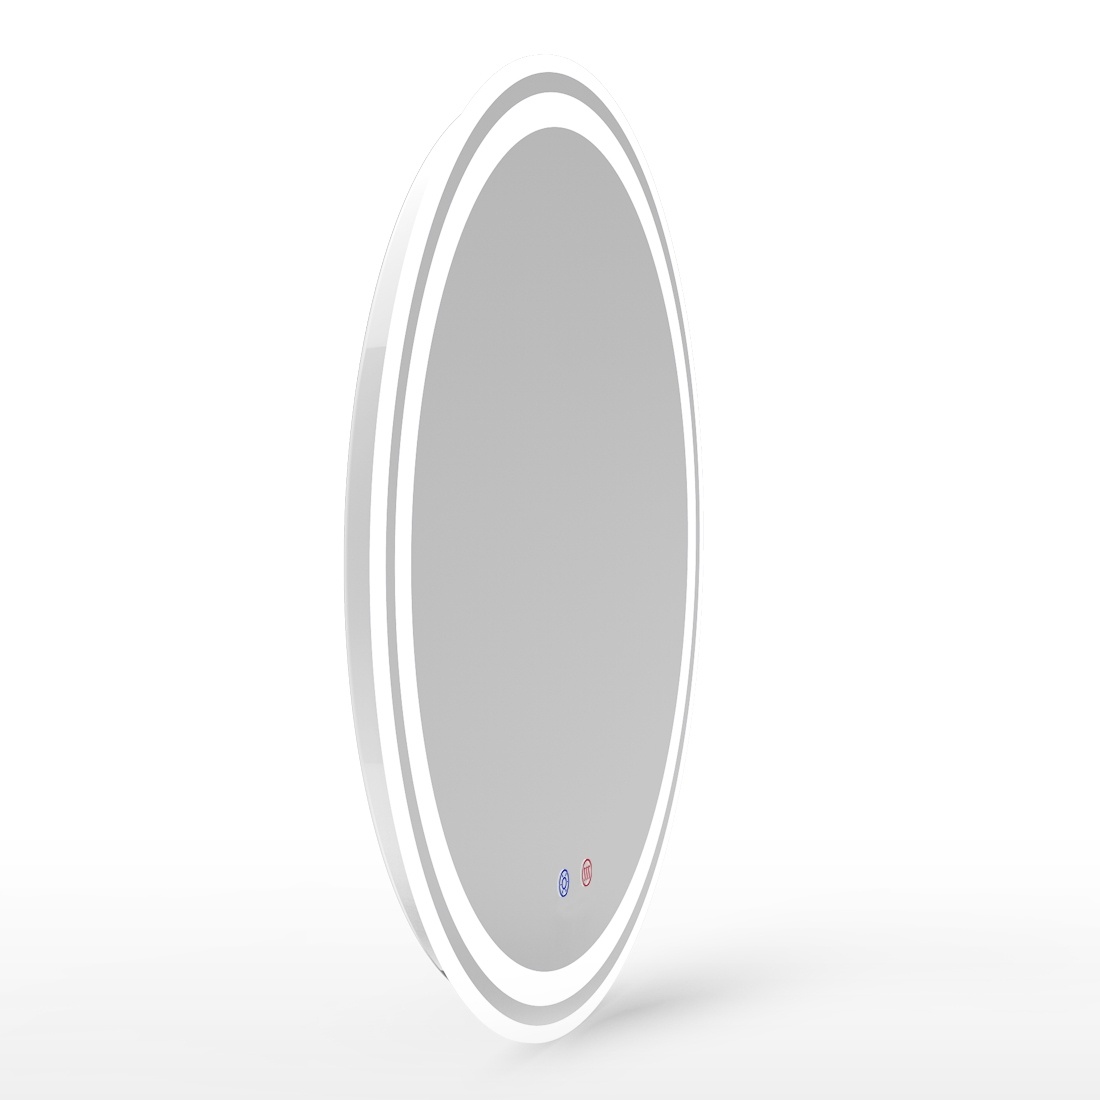 Зеркало круглое для ванны VOLLE VOLLE 60x60см c подсветкой сенсорное включение антизапотевание 16-21-600